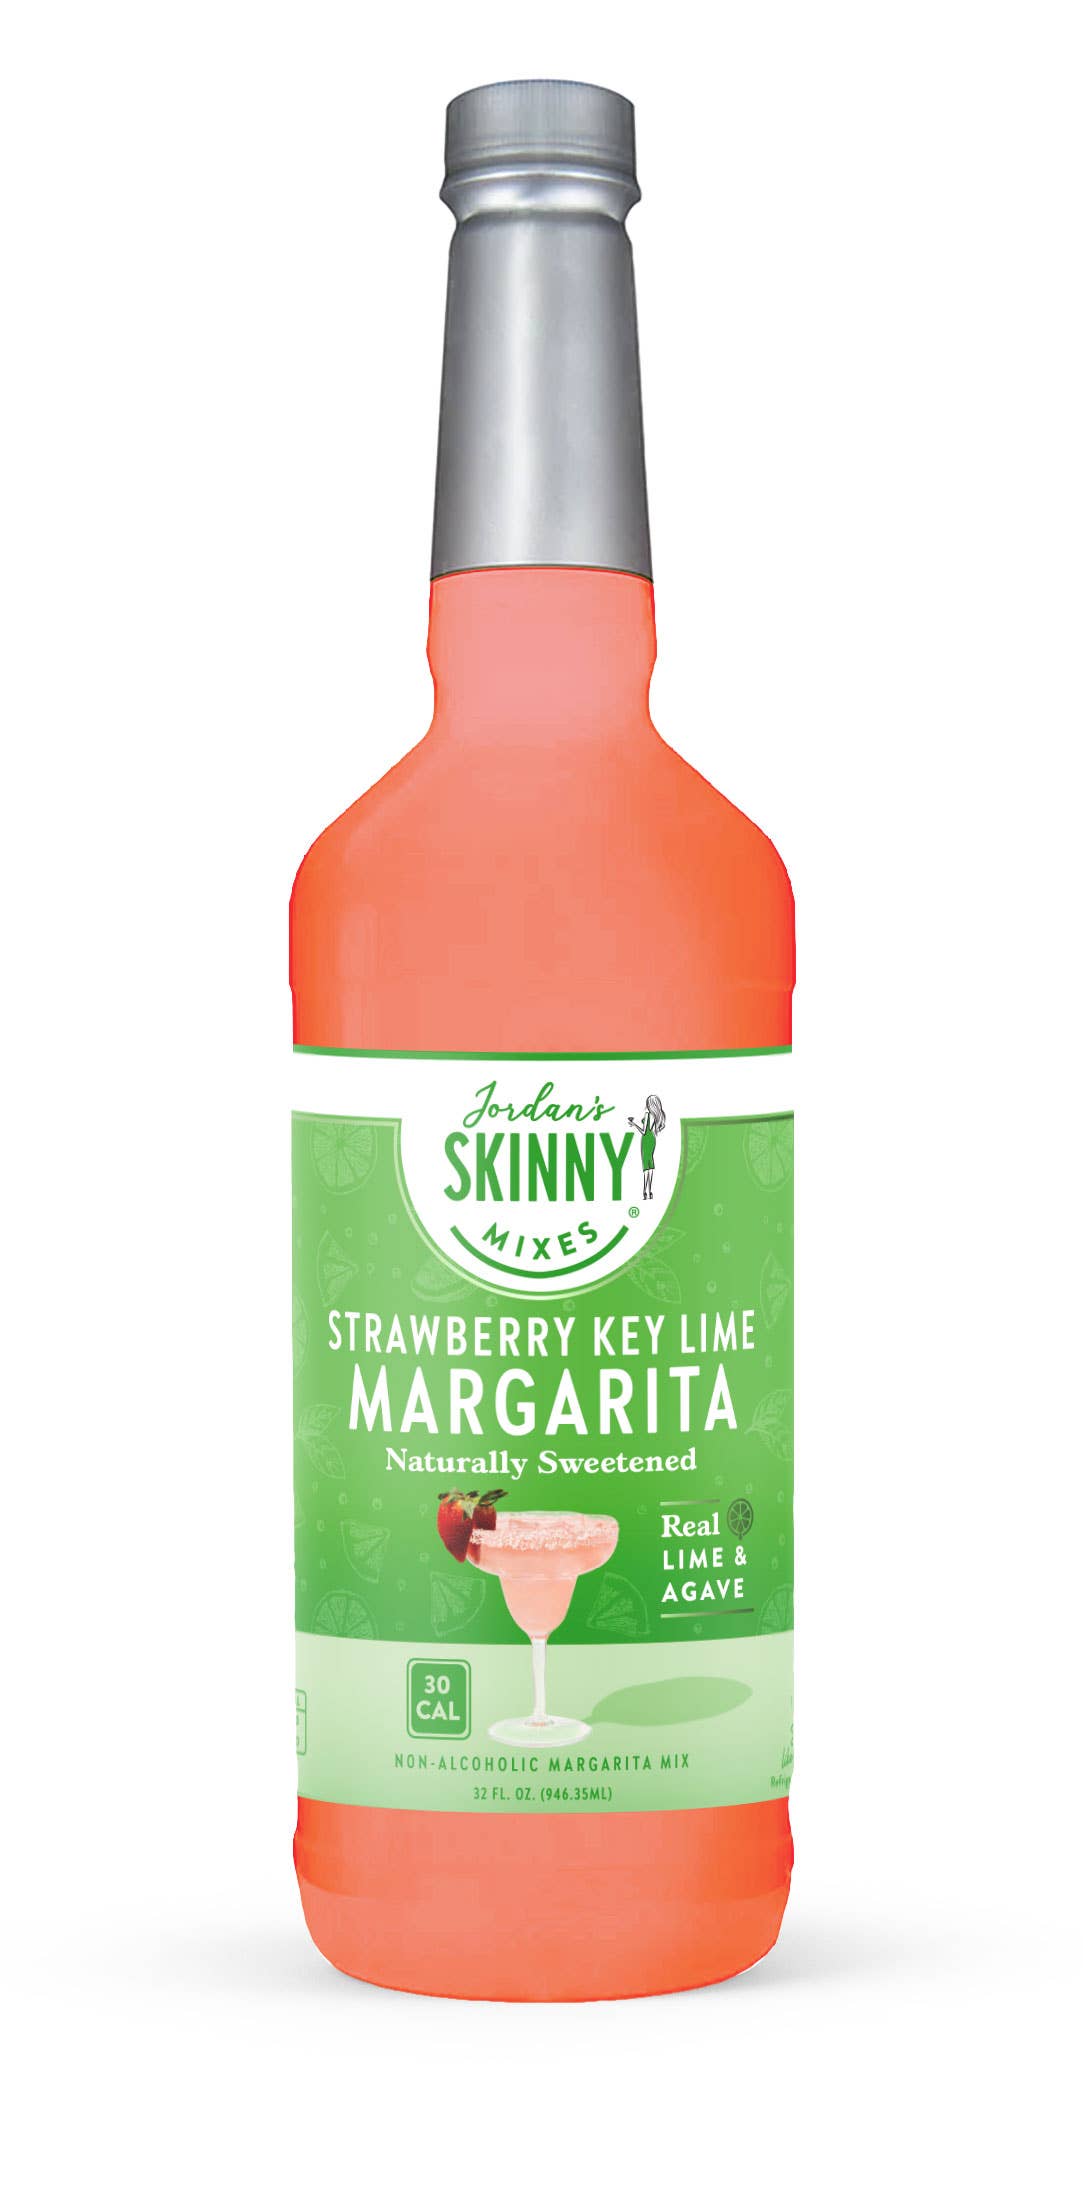 Skinny Mixes - Natural Strawberry Key Lime Margarita - Mixer